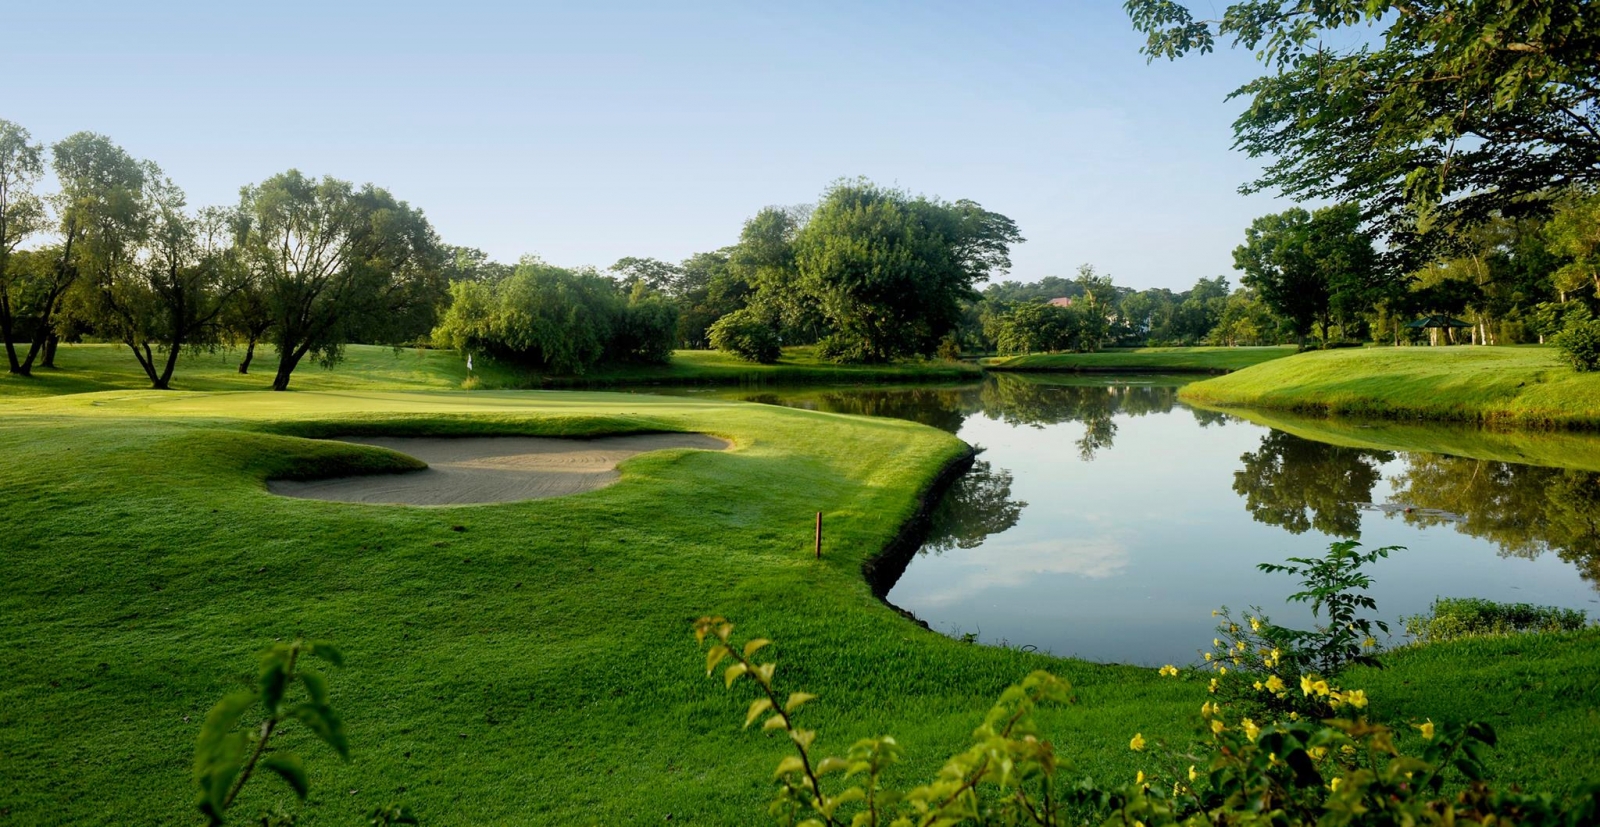 Luisita Golf & Country Club▲菲律賓最著名的錦標級球場之一，由著名的球員兼球場設計師老羅伯瓊斯（Robert Trent Jones Sr.，沒錯，就是小羅德瓊絲的父親）設計，擁有18個深具挑戰性的球洞，河流、池塘和樹林等障礙物接著自然的景觀設計，是一座兼具挑戰與美景的球場。最早創立於1968年，近年經過整建，成為許多球友造訪克拉克的必打之地。